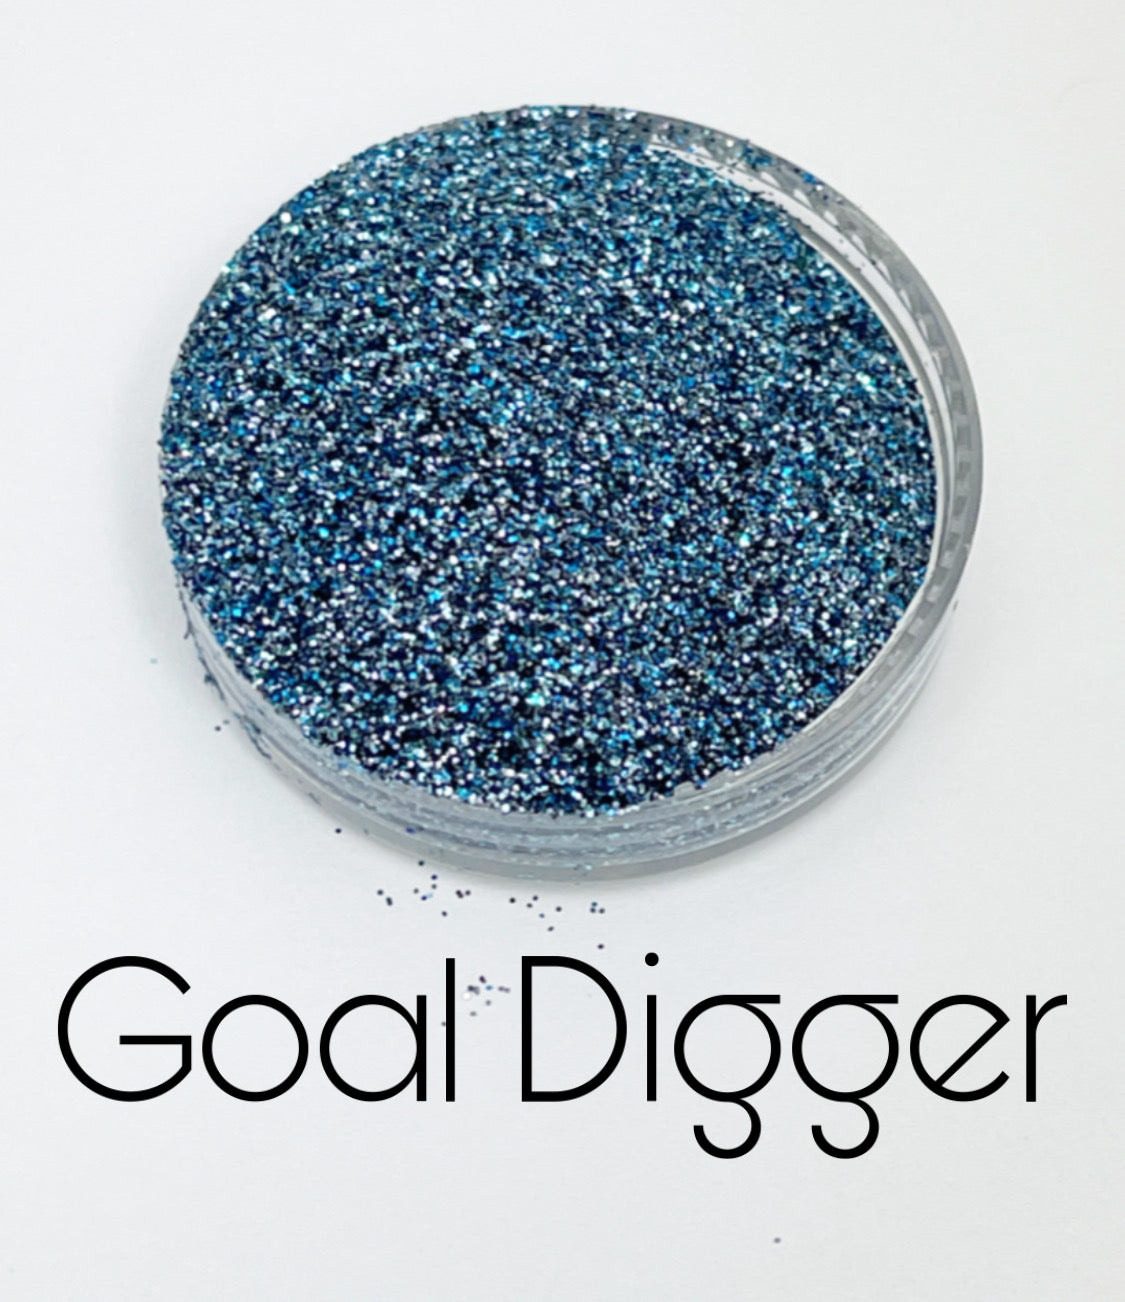 G0777 Goal Digger